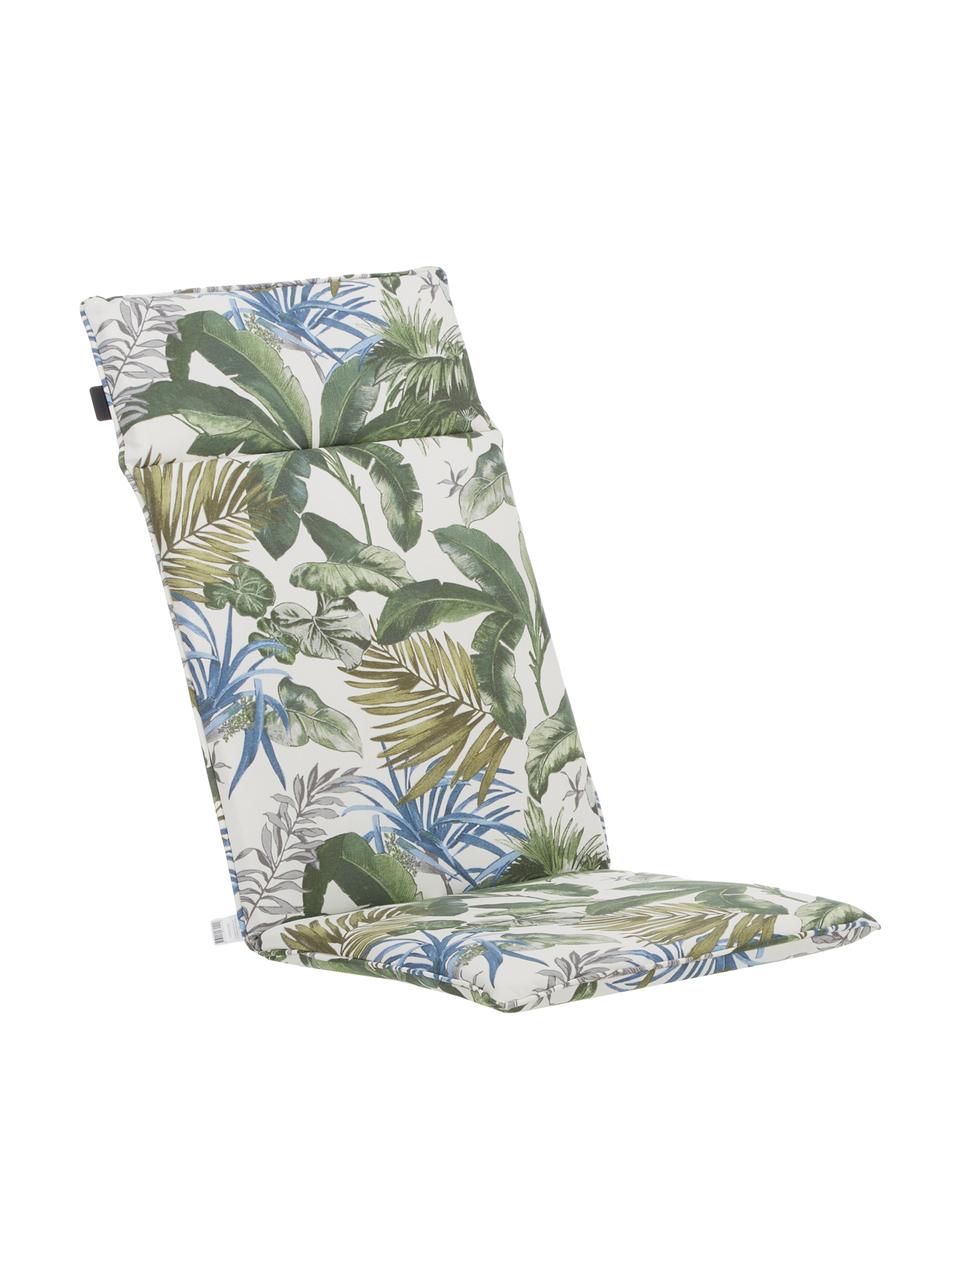 Hochlehner-Stuhlauflage Bliss mit tropischem Print, wasserabweisend, Bezug: 50% Baumwolle, 45% Polyes, Creme, Grün- und Blautöne, B 50 x L 120 cm